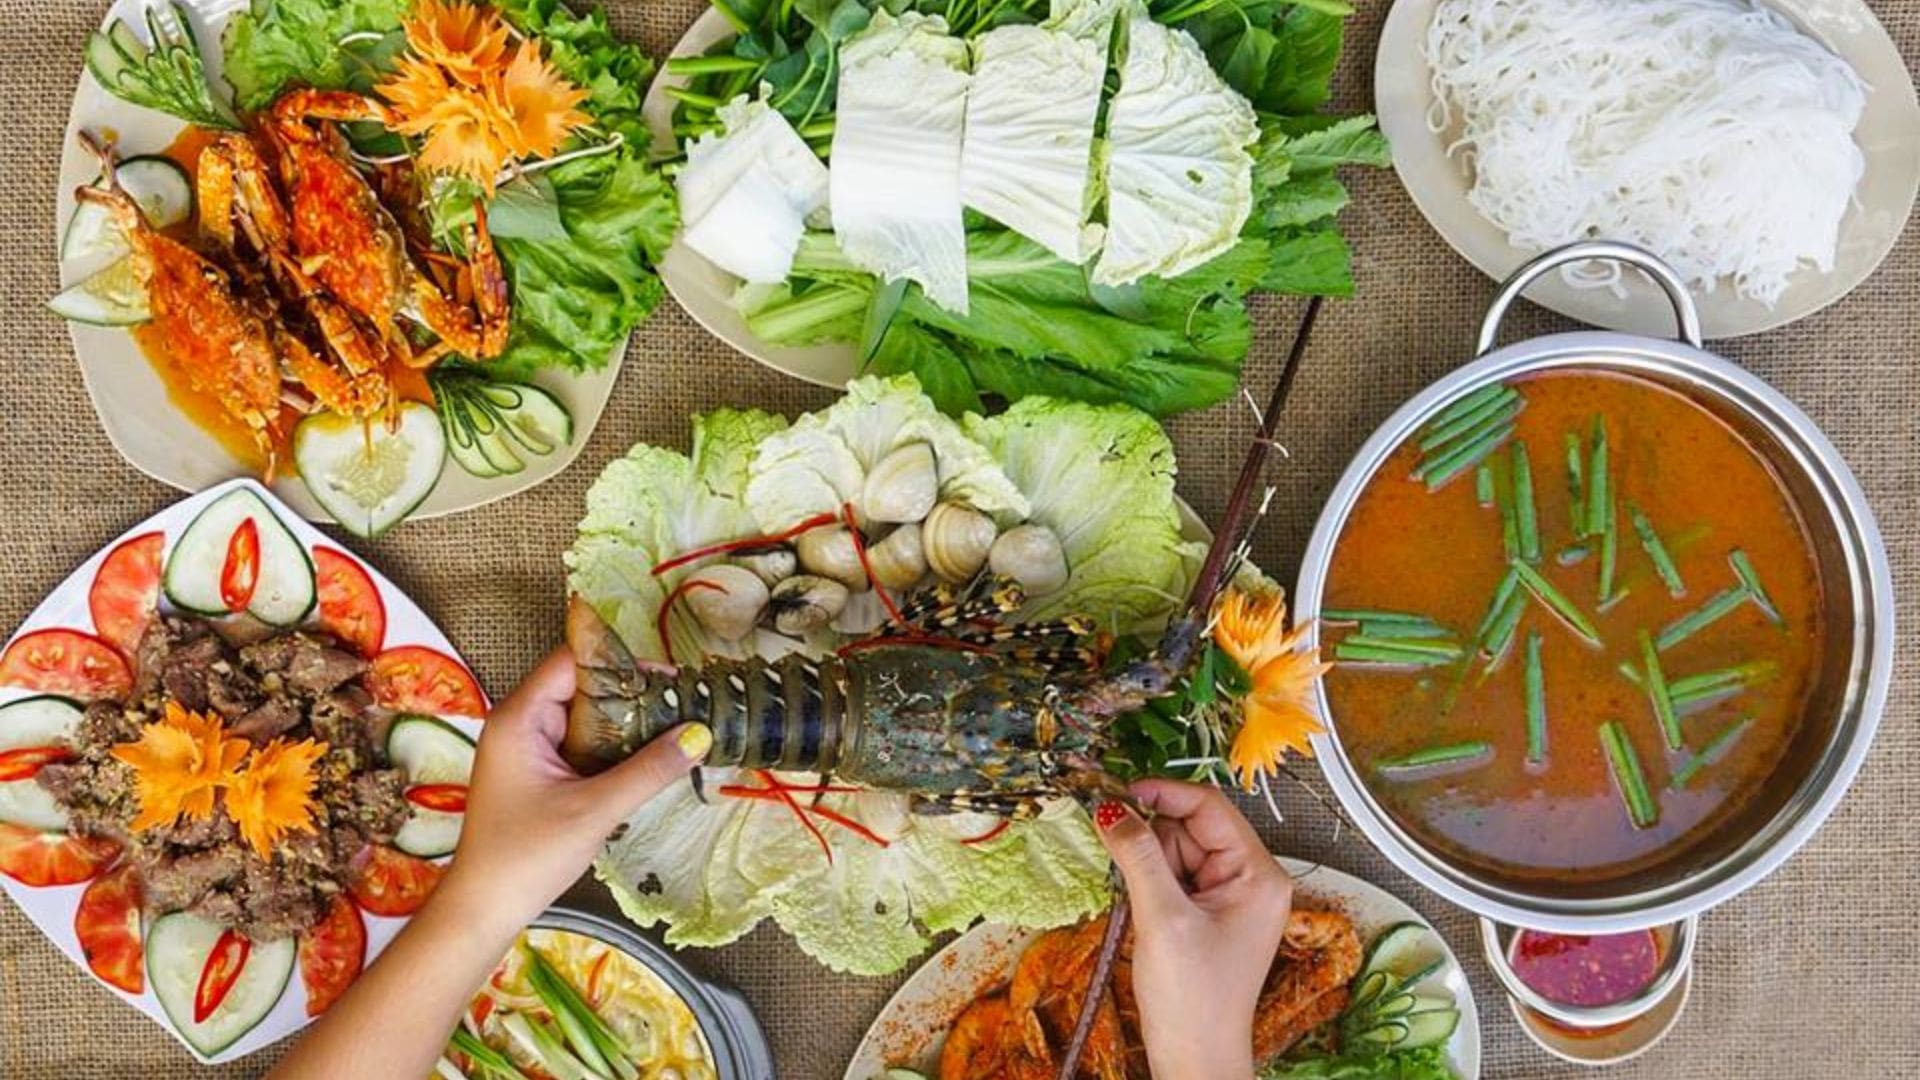 Hải sản Biển Đông - Nhà hàng hải sản Đà Nẵng giá rẻ 